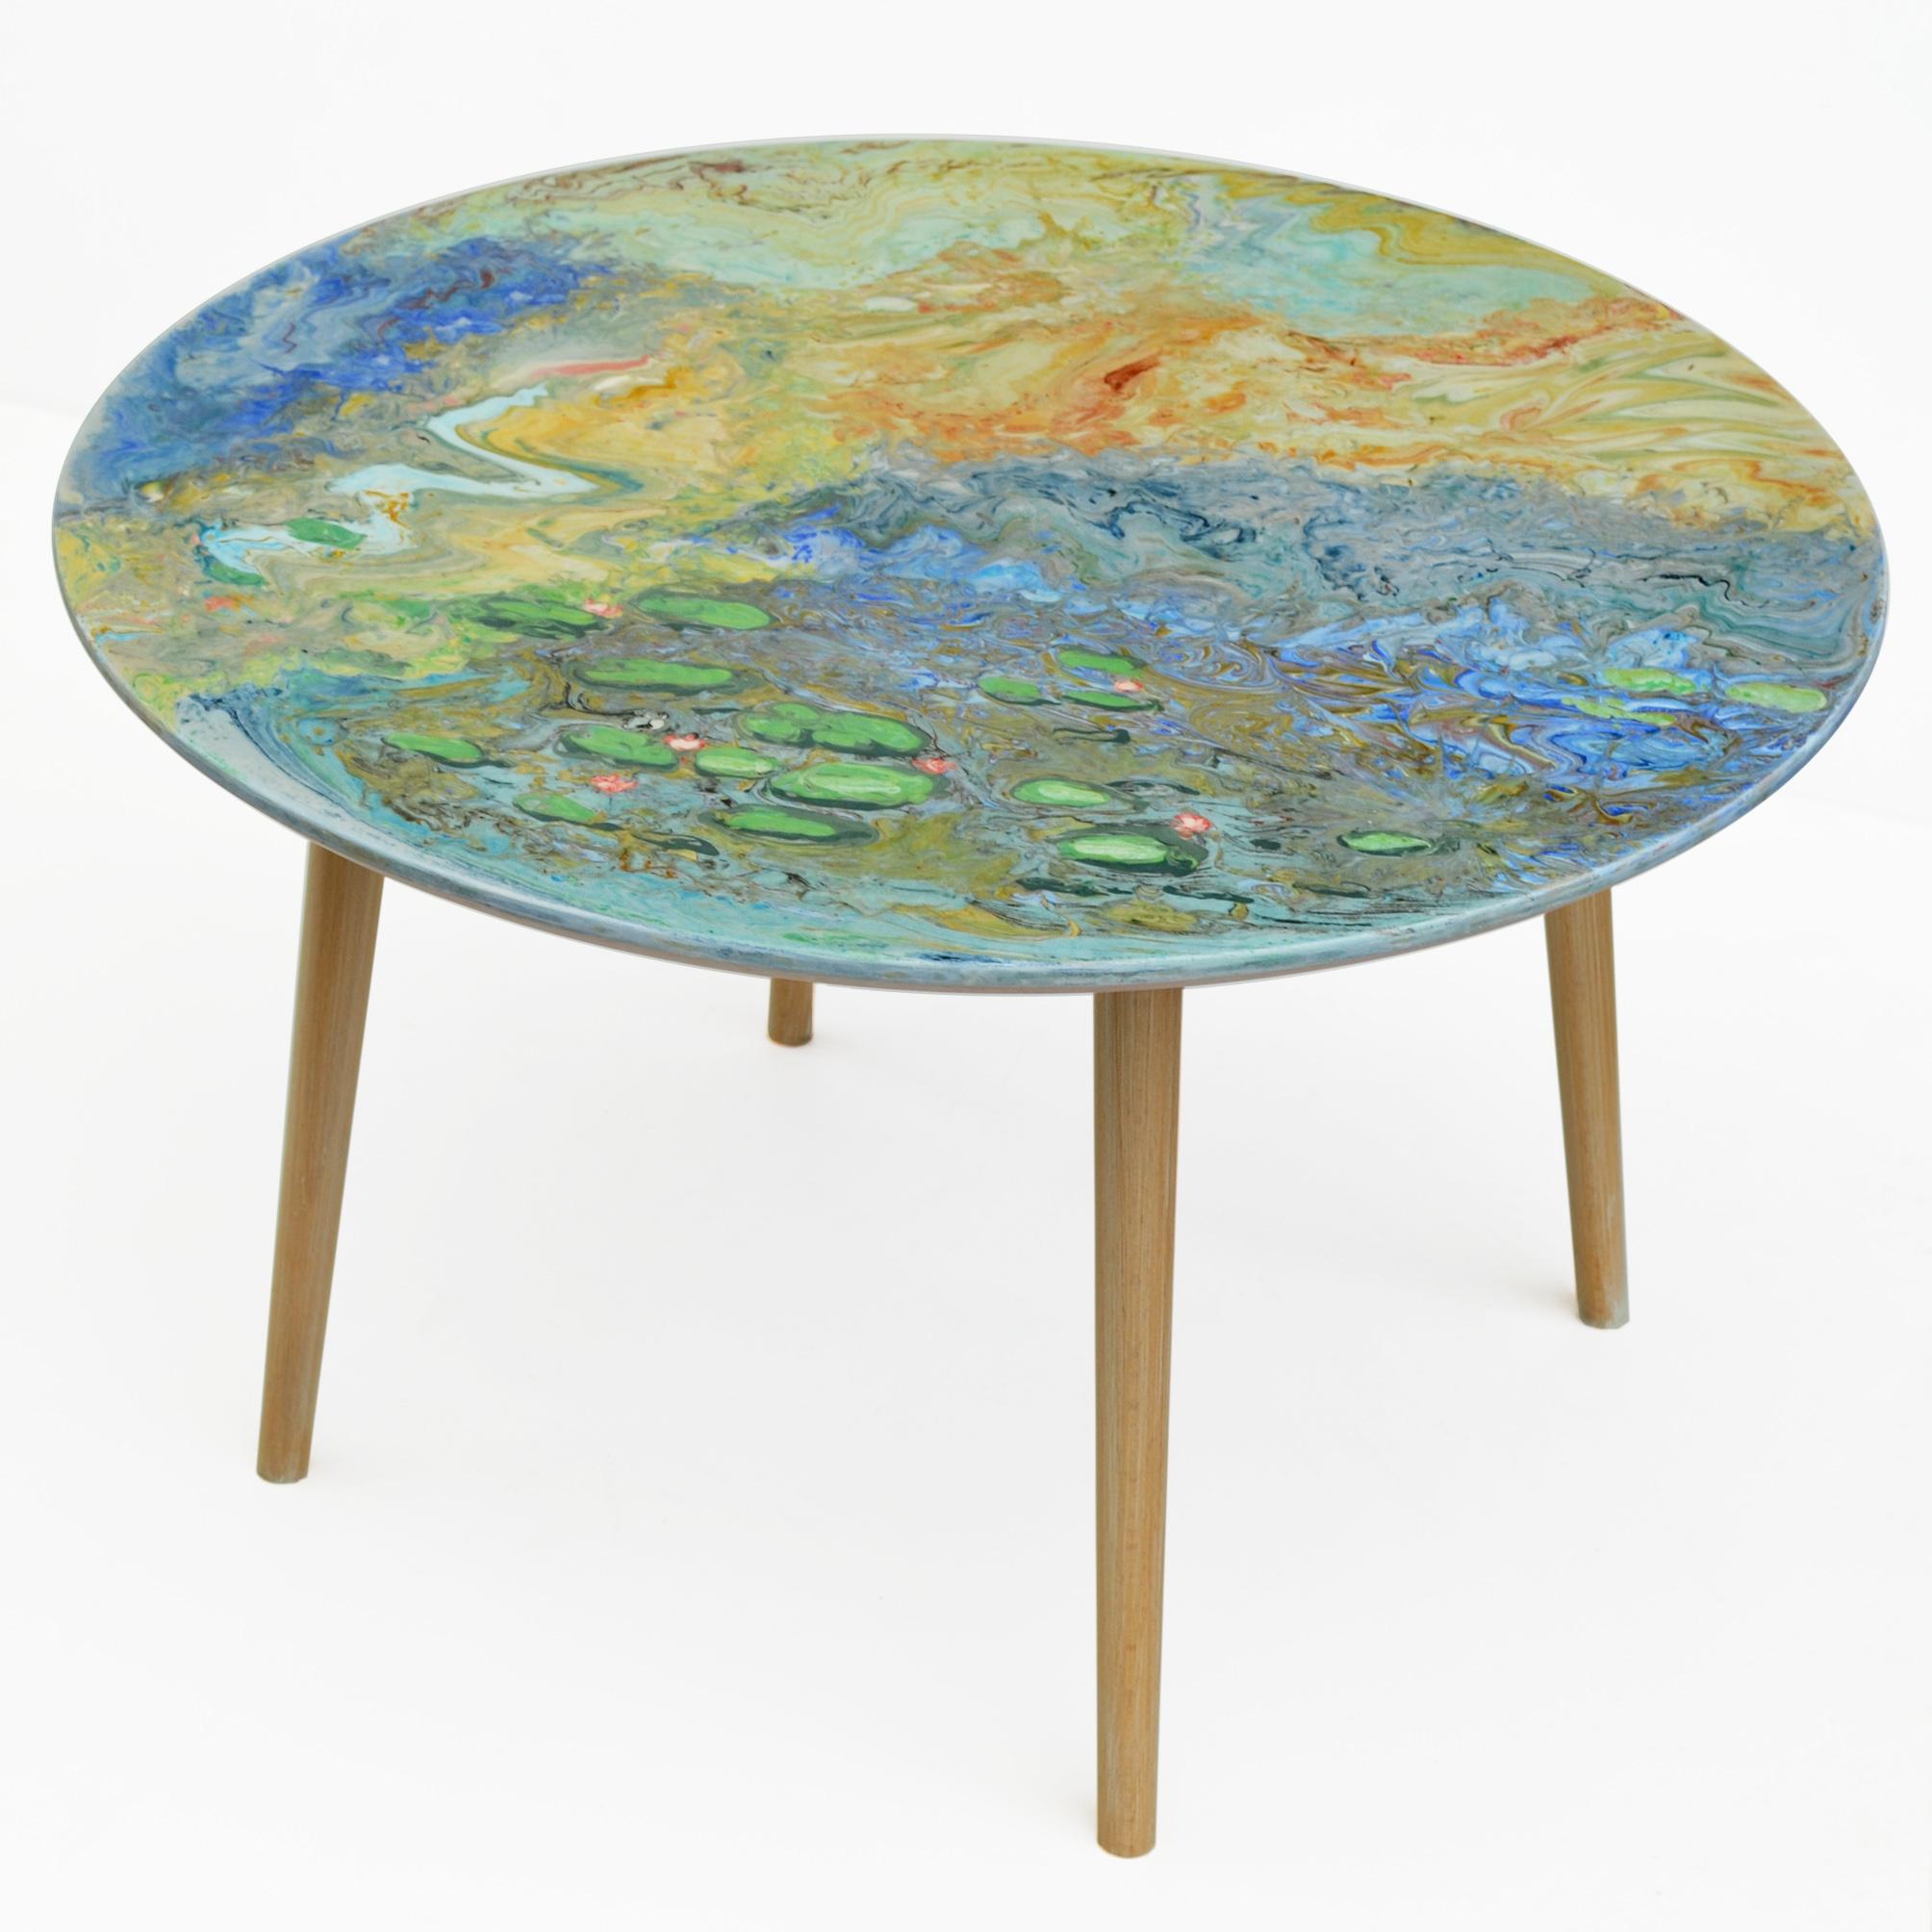 Dieser kleine Tisch mit Marmorplatte verziert ganz mit Scagliola Art inlaies, deren Dekoration ist eine Hommage an den französischen Künstler Monet und nimmt seine berühmten Seerosen in einer eher abstrakten Vision. Der Sockel ist aus Naturholz mit